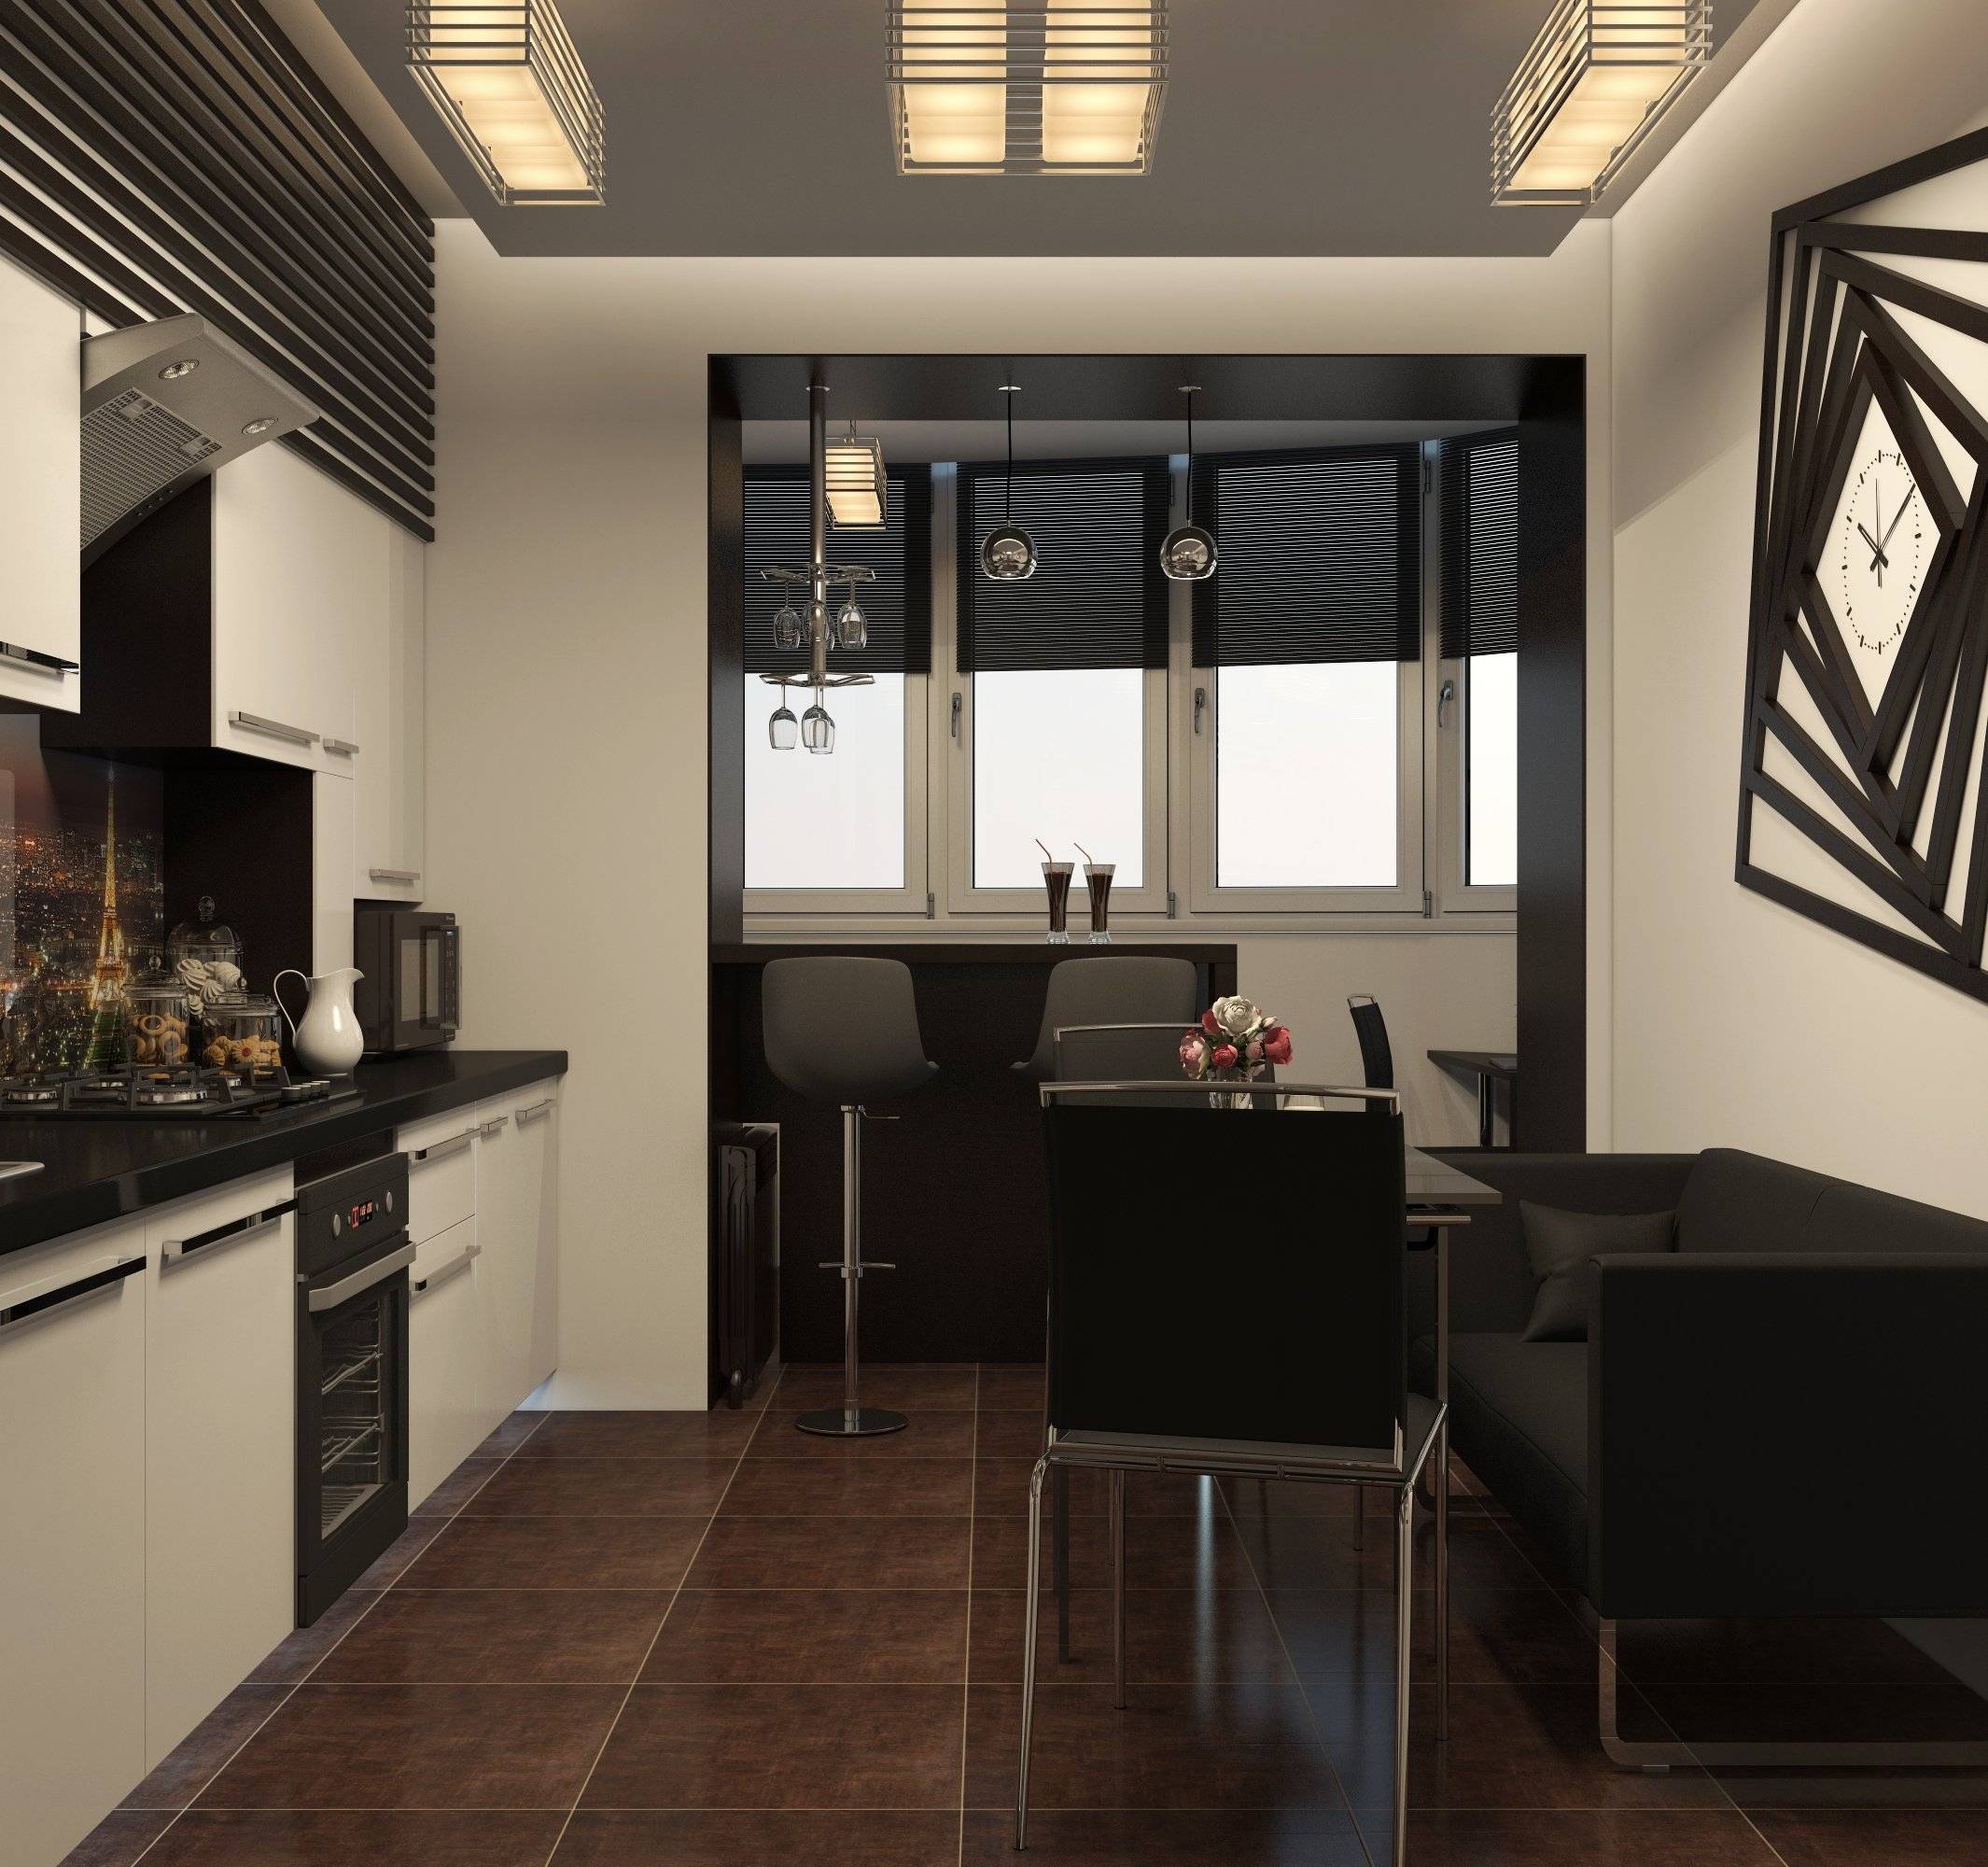 Дизайн кухни, совмещенной с балконом: фото, идеи планировки и оформления интерьера